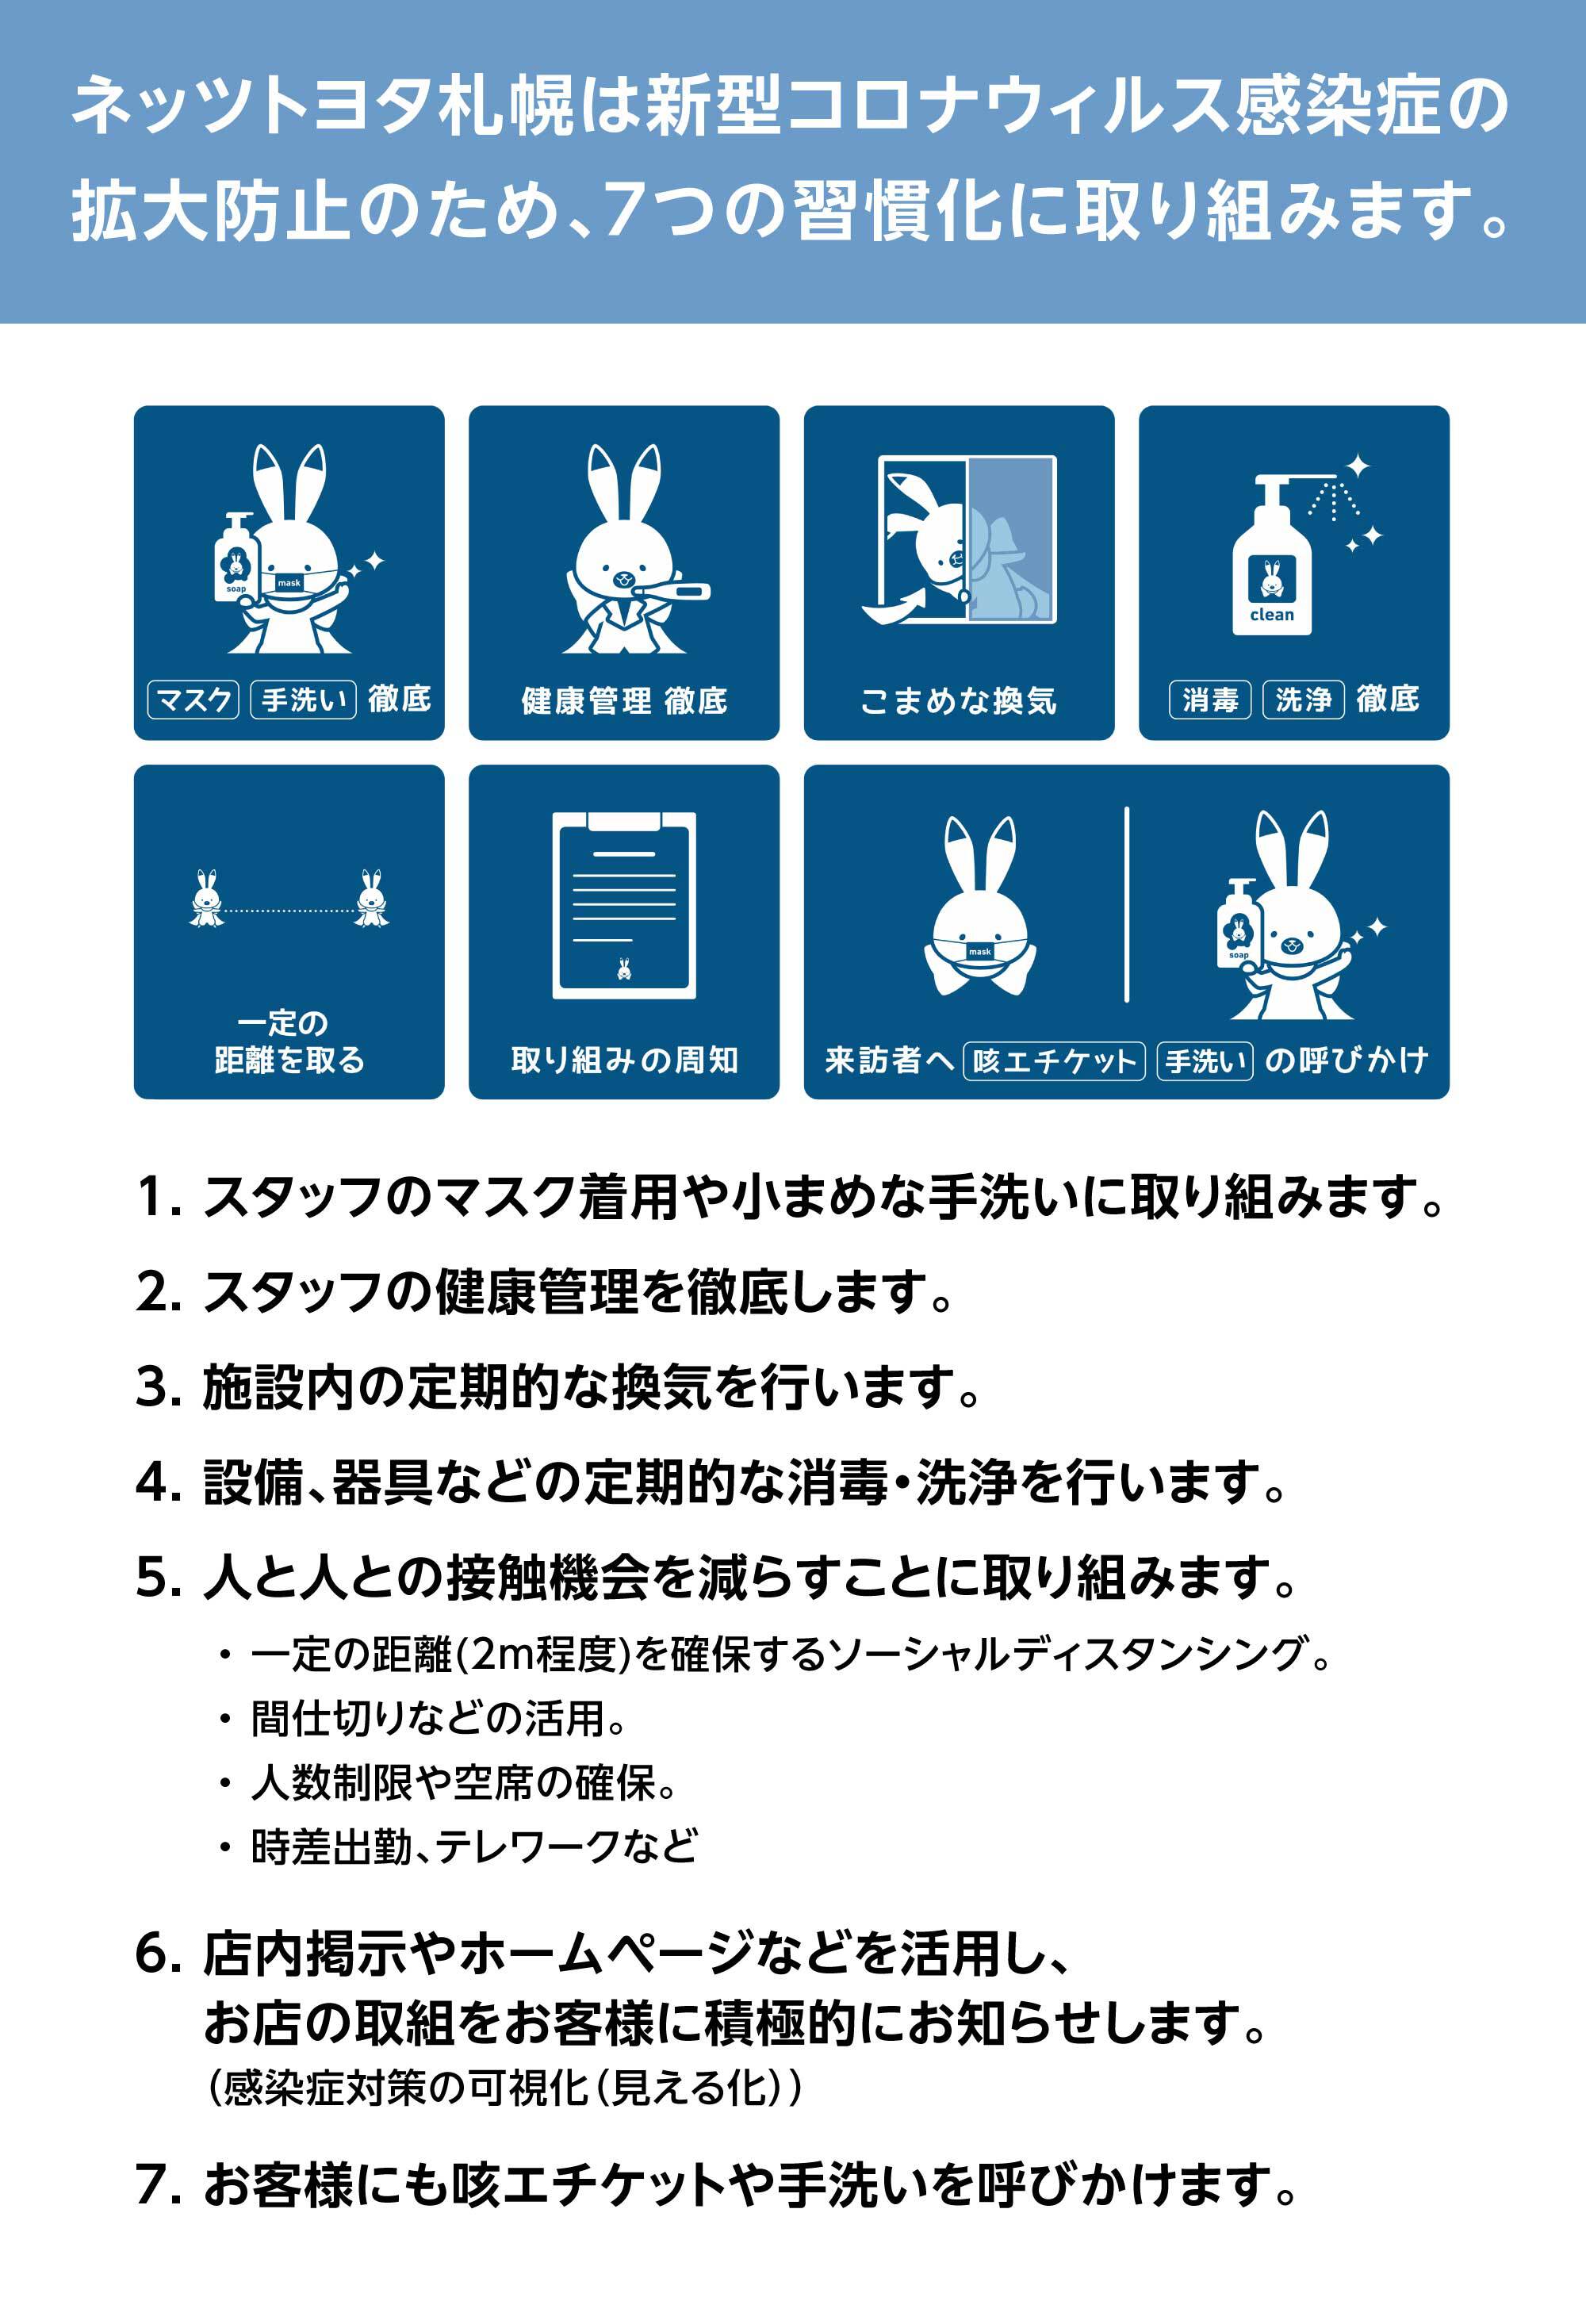 ネッツトヨタ札幌は新型コロナウィル感染症の拡大防止のため7つの習慣化に取り組みます。